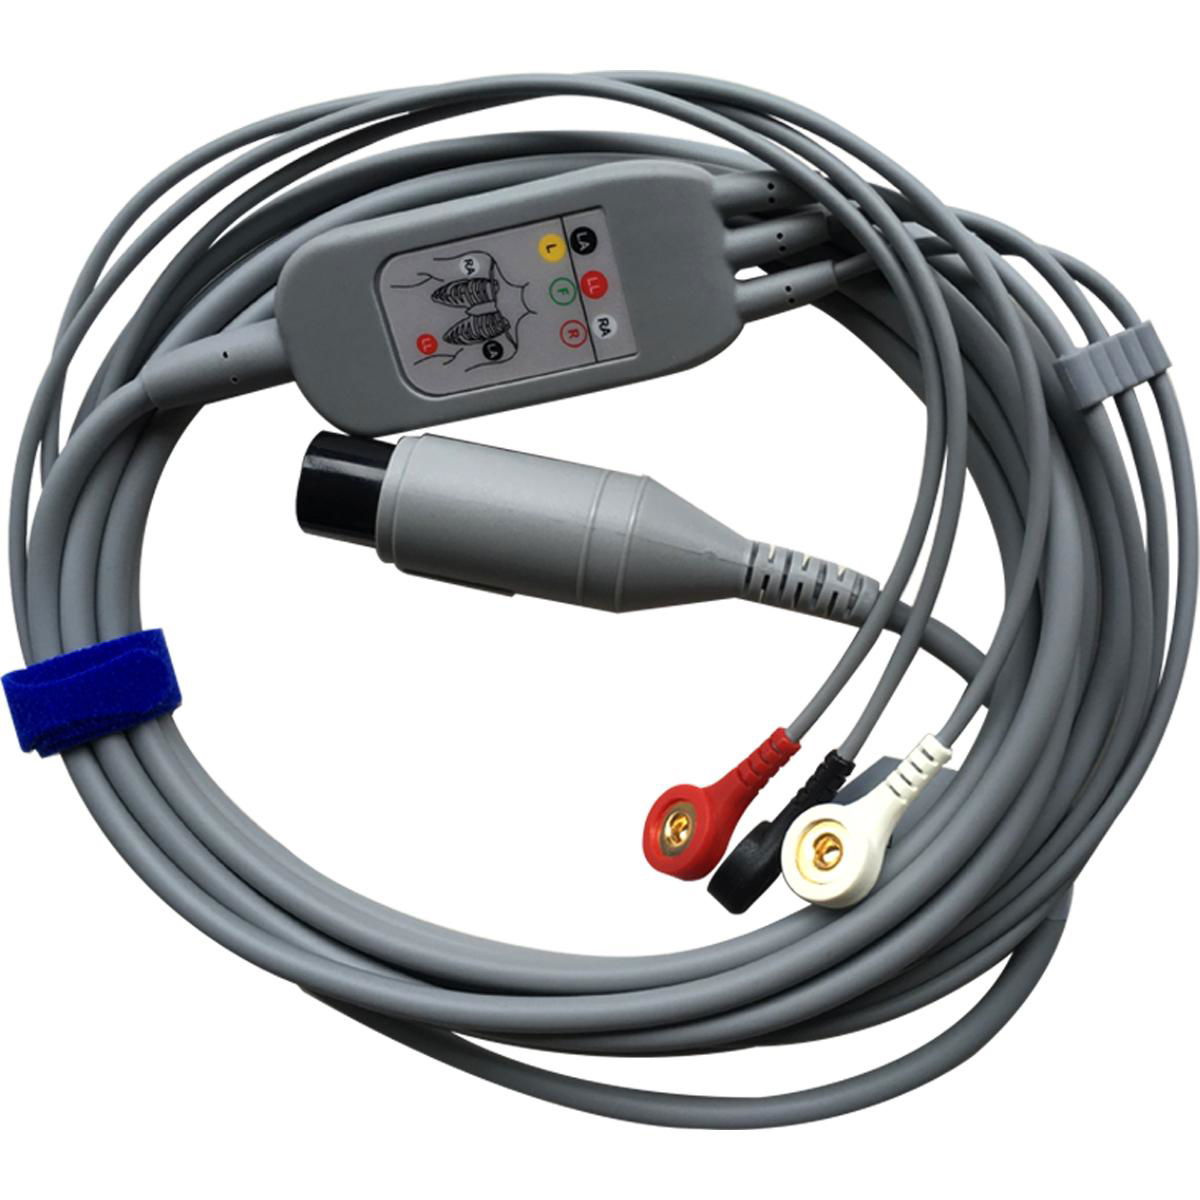 Edan 6 pins 3 buckles for ECG EC03DAS061 ECG monitor leadwire cable